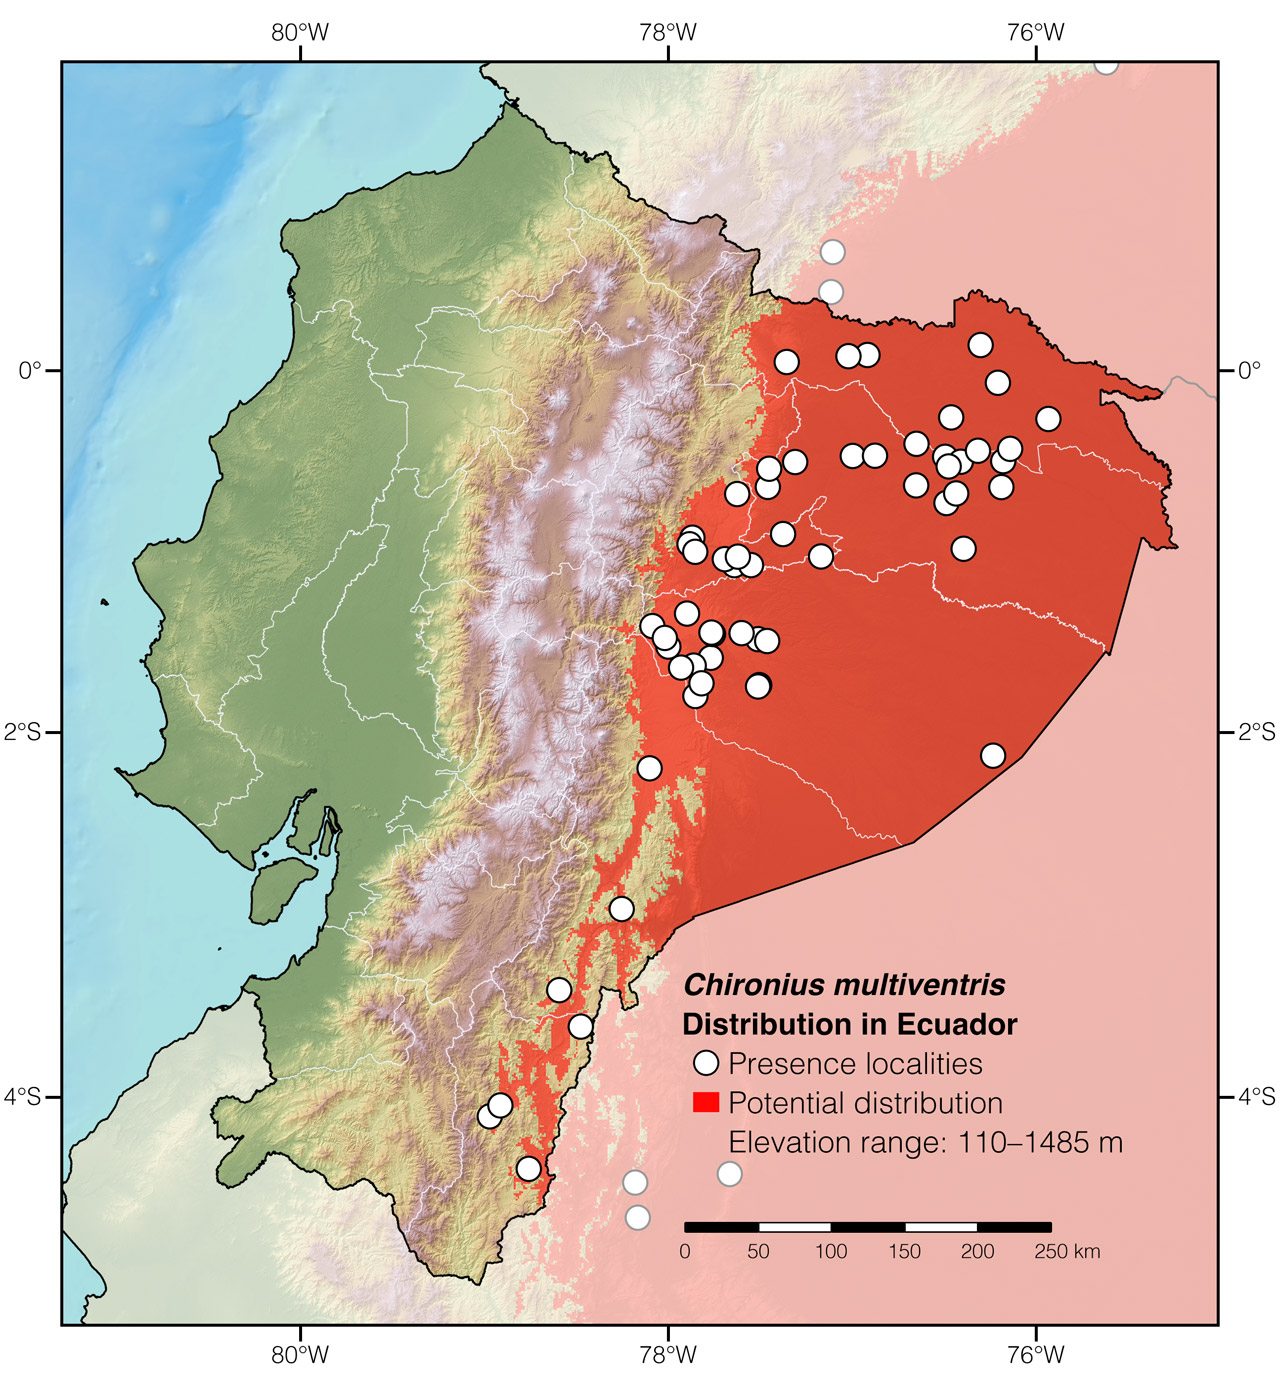 Distribution of Chironius multiventris in Ecuador